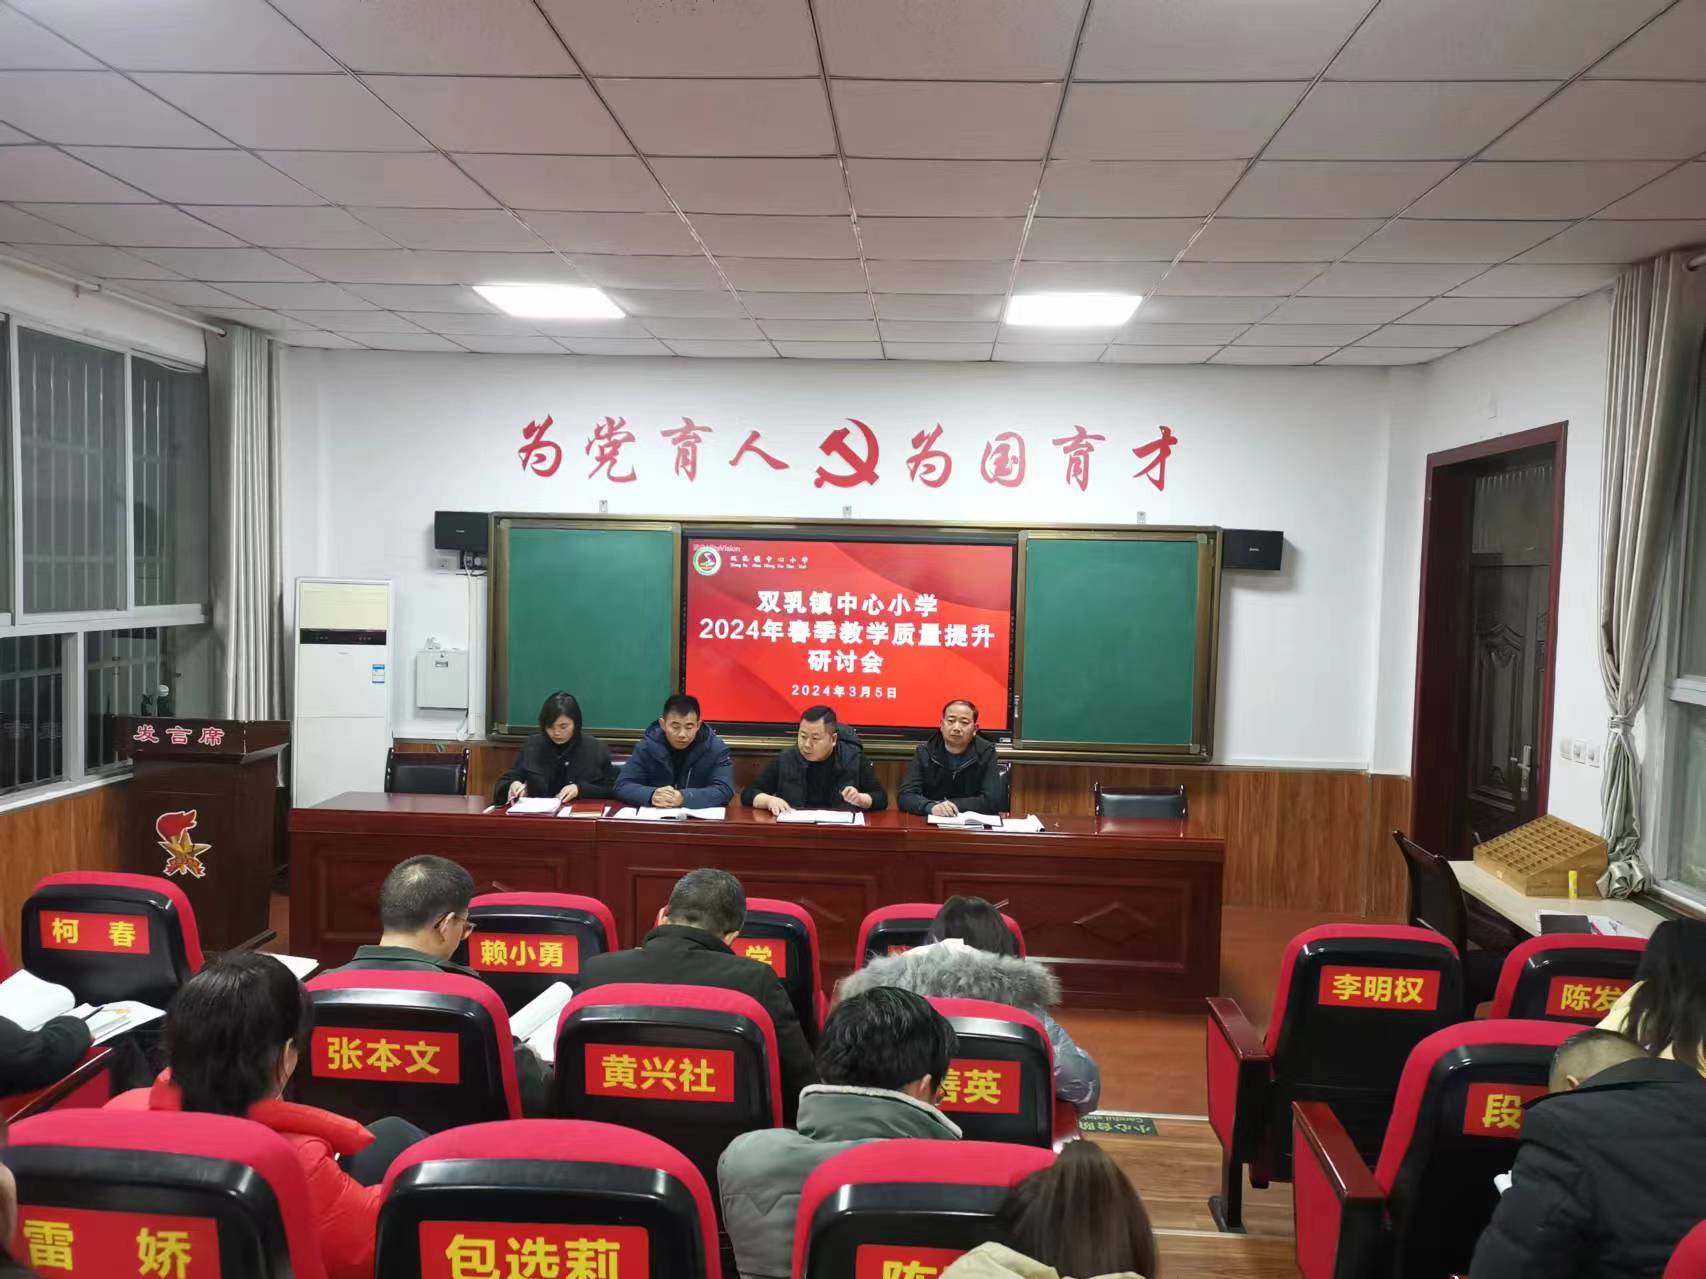 汉阴县双乳镇中心小学召开提升质量研讨会